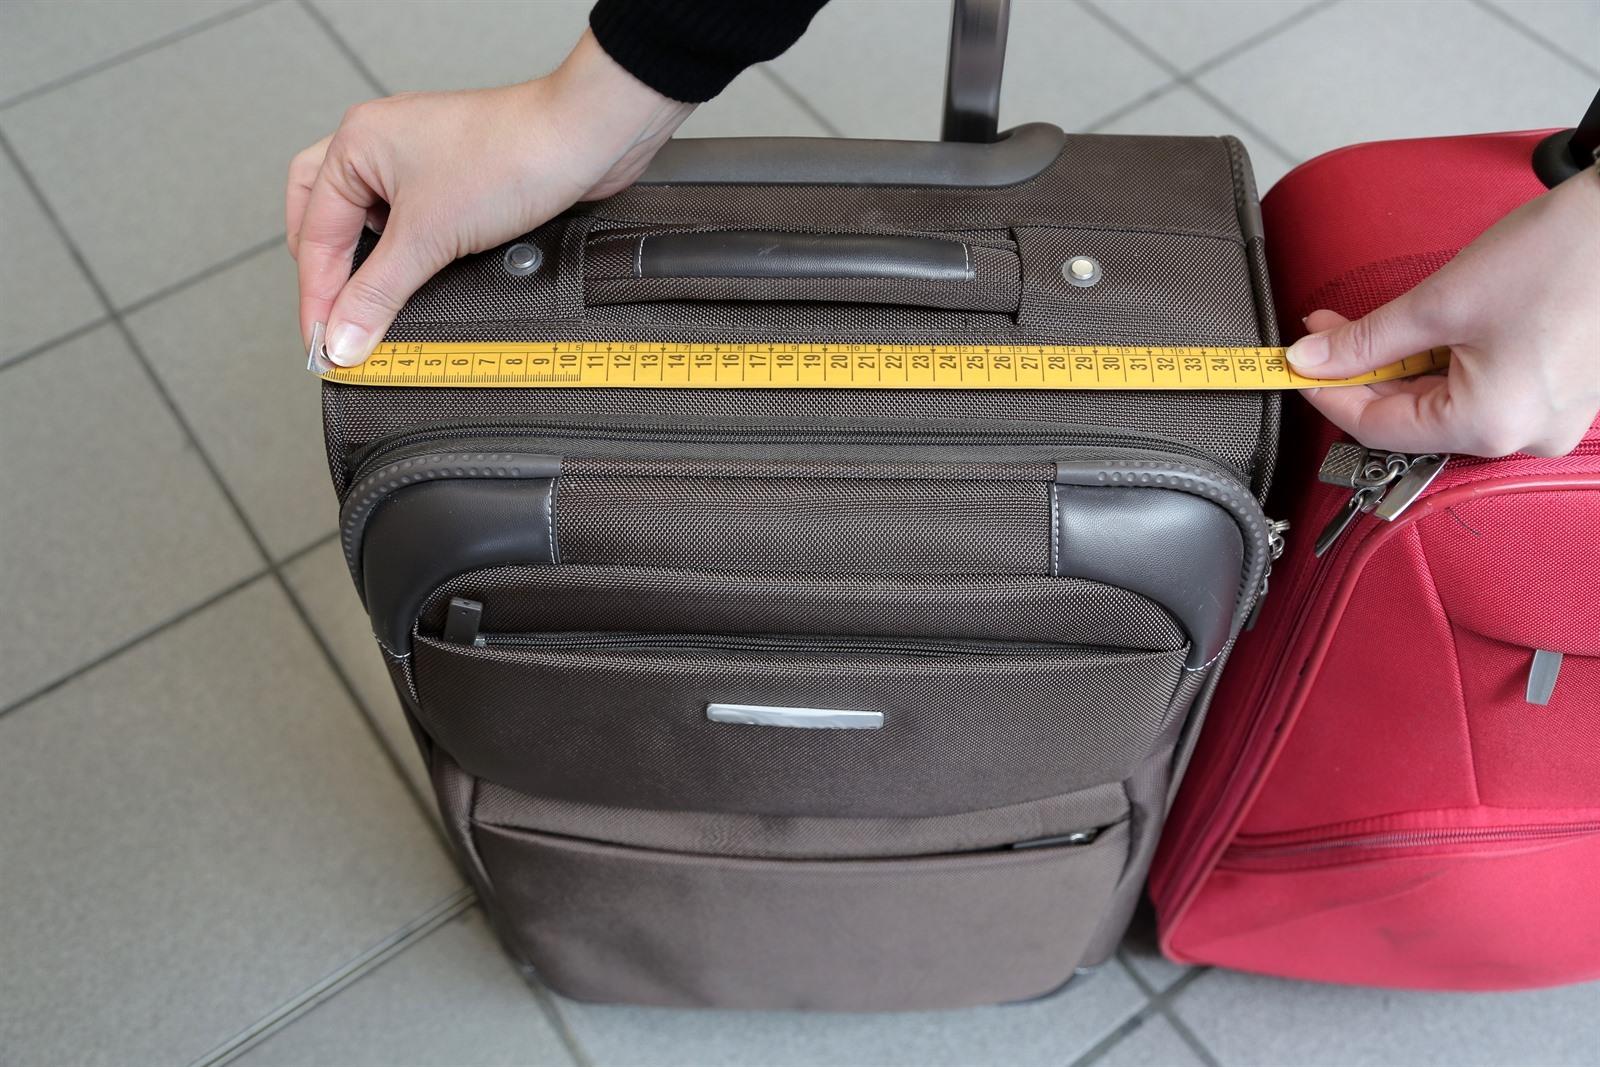 Split kraai leren Met handbagage vliegen? 20 x inpaktips: hoe krijg je er meer in?